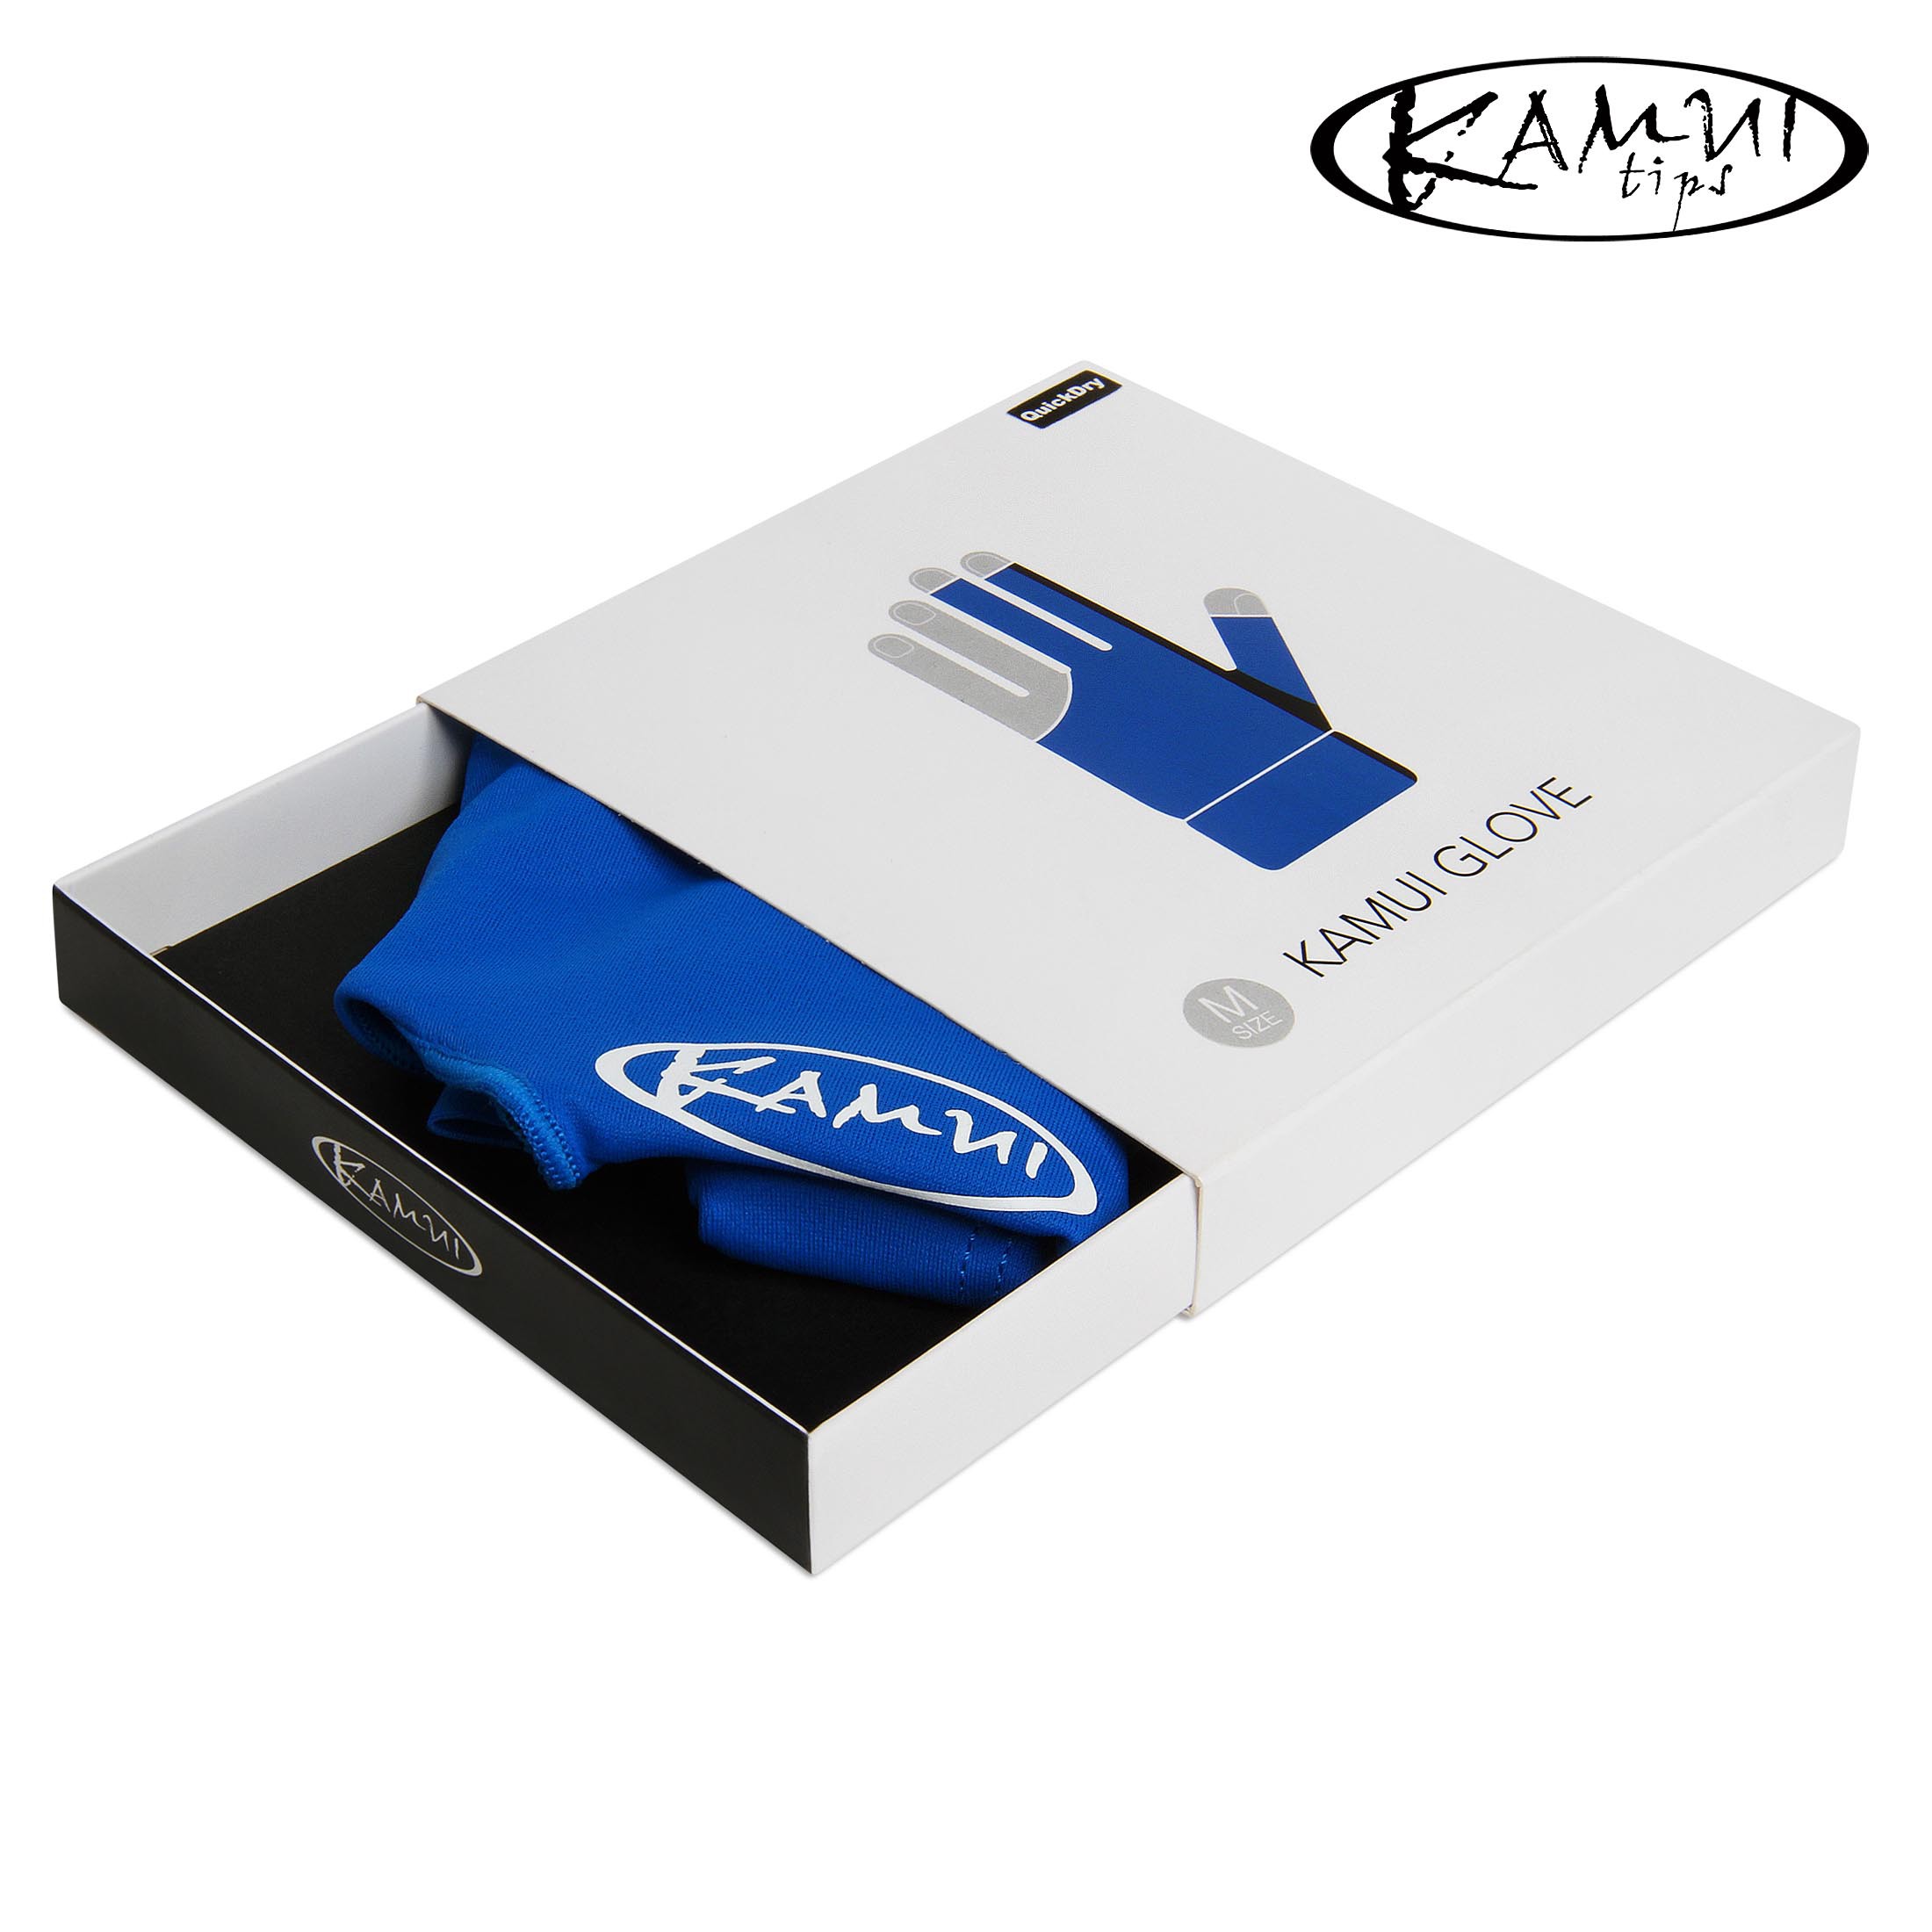 Перчатка Kamui QuickDry синяя XL